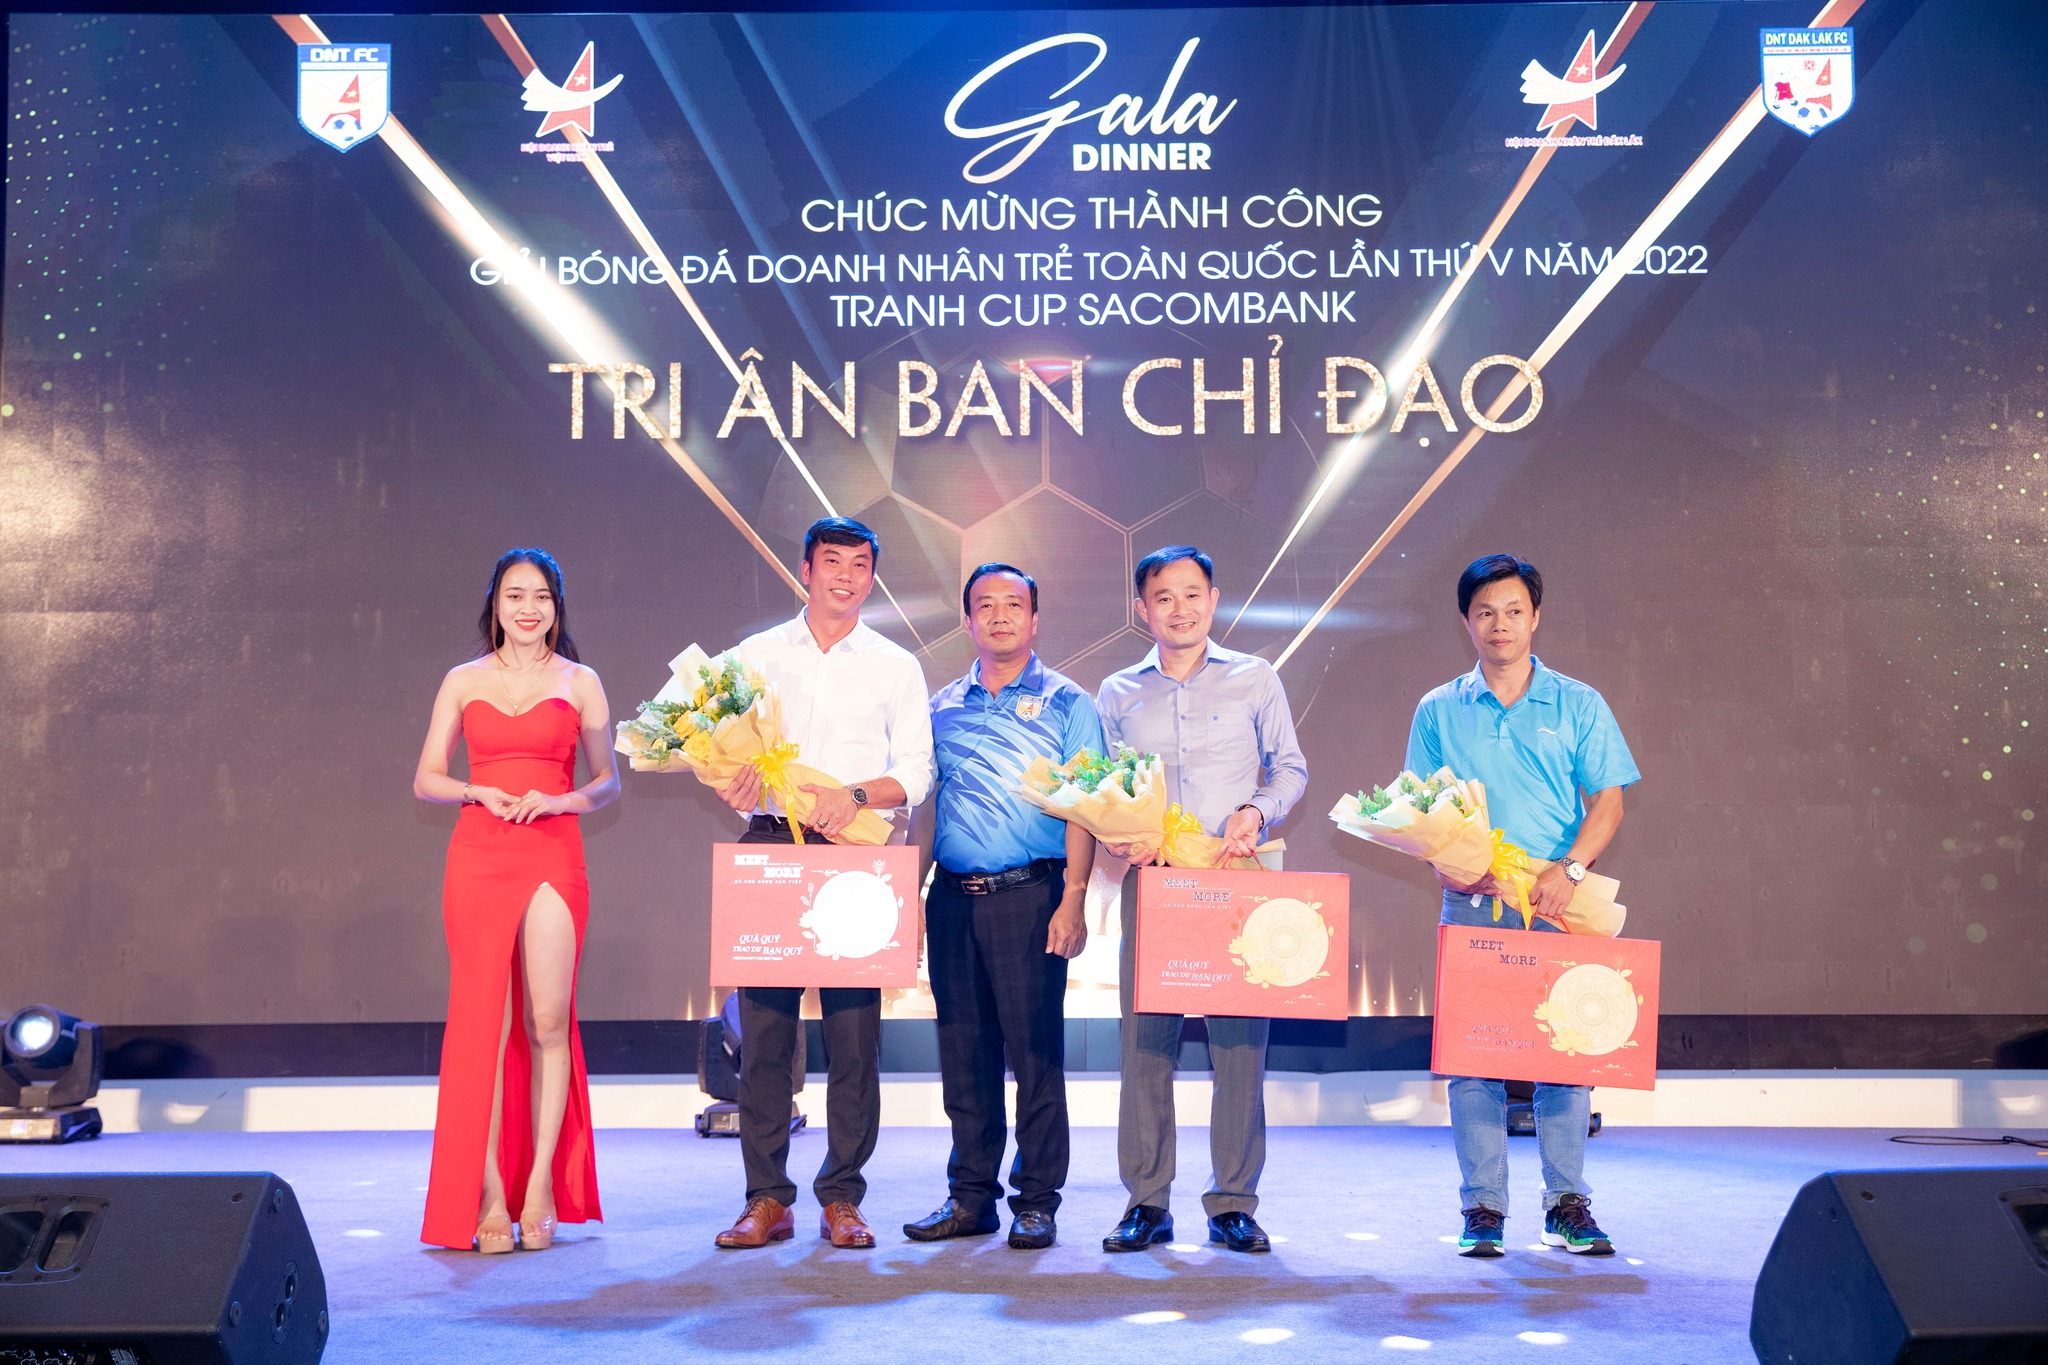 Ông Phan Thanh Thiên - Phó chủ tịch hội Doanh Nhân Trẻ Việt Nam tại giải bóng đá Doanh nhân trẻ toàn quốc lần thứ V năm 2022